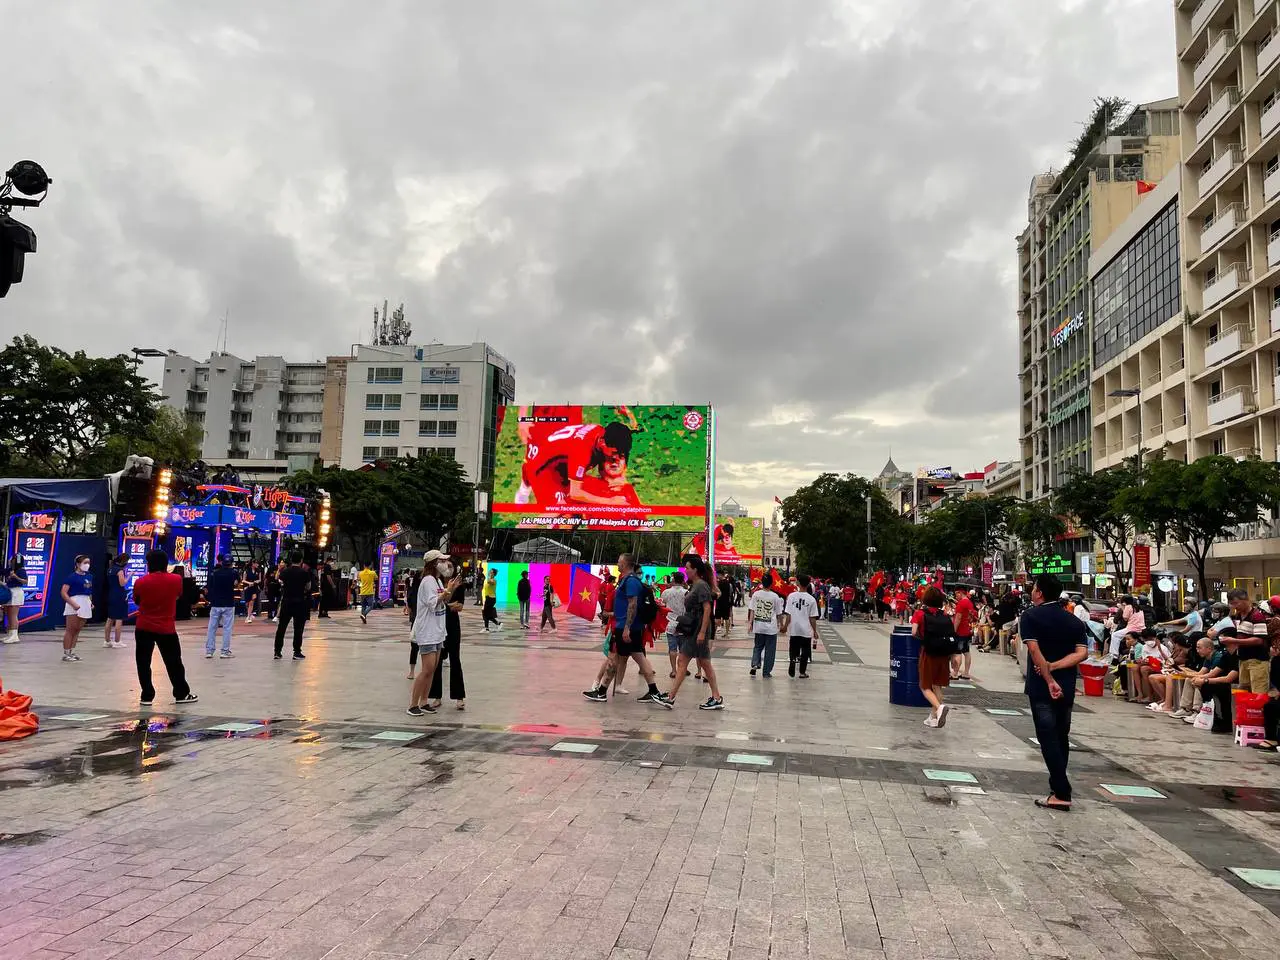 Ngay lúc này tại Mỹ Đình: Người dân đội mưa xếp hàng trước mấy tiếng đồng hồ để xem U23 Việt Nam đá chung kết SEA Games - Ảnh 16.